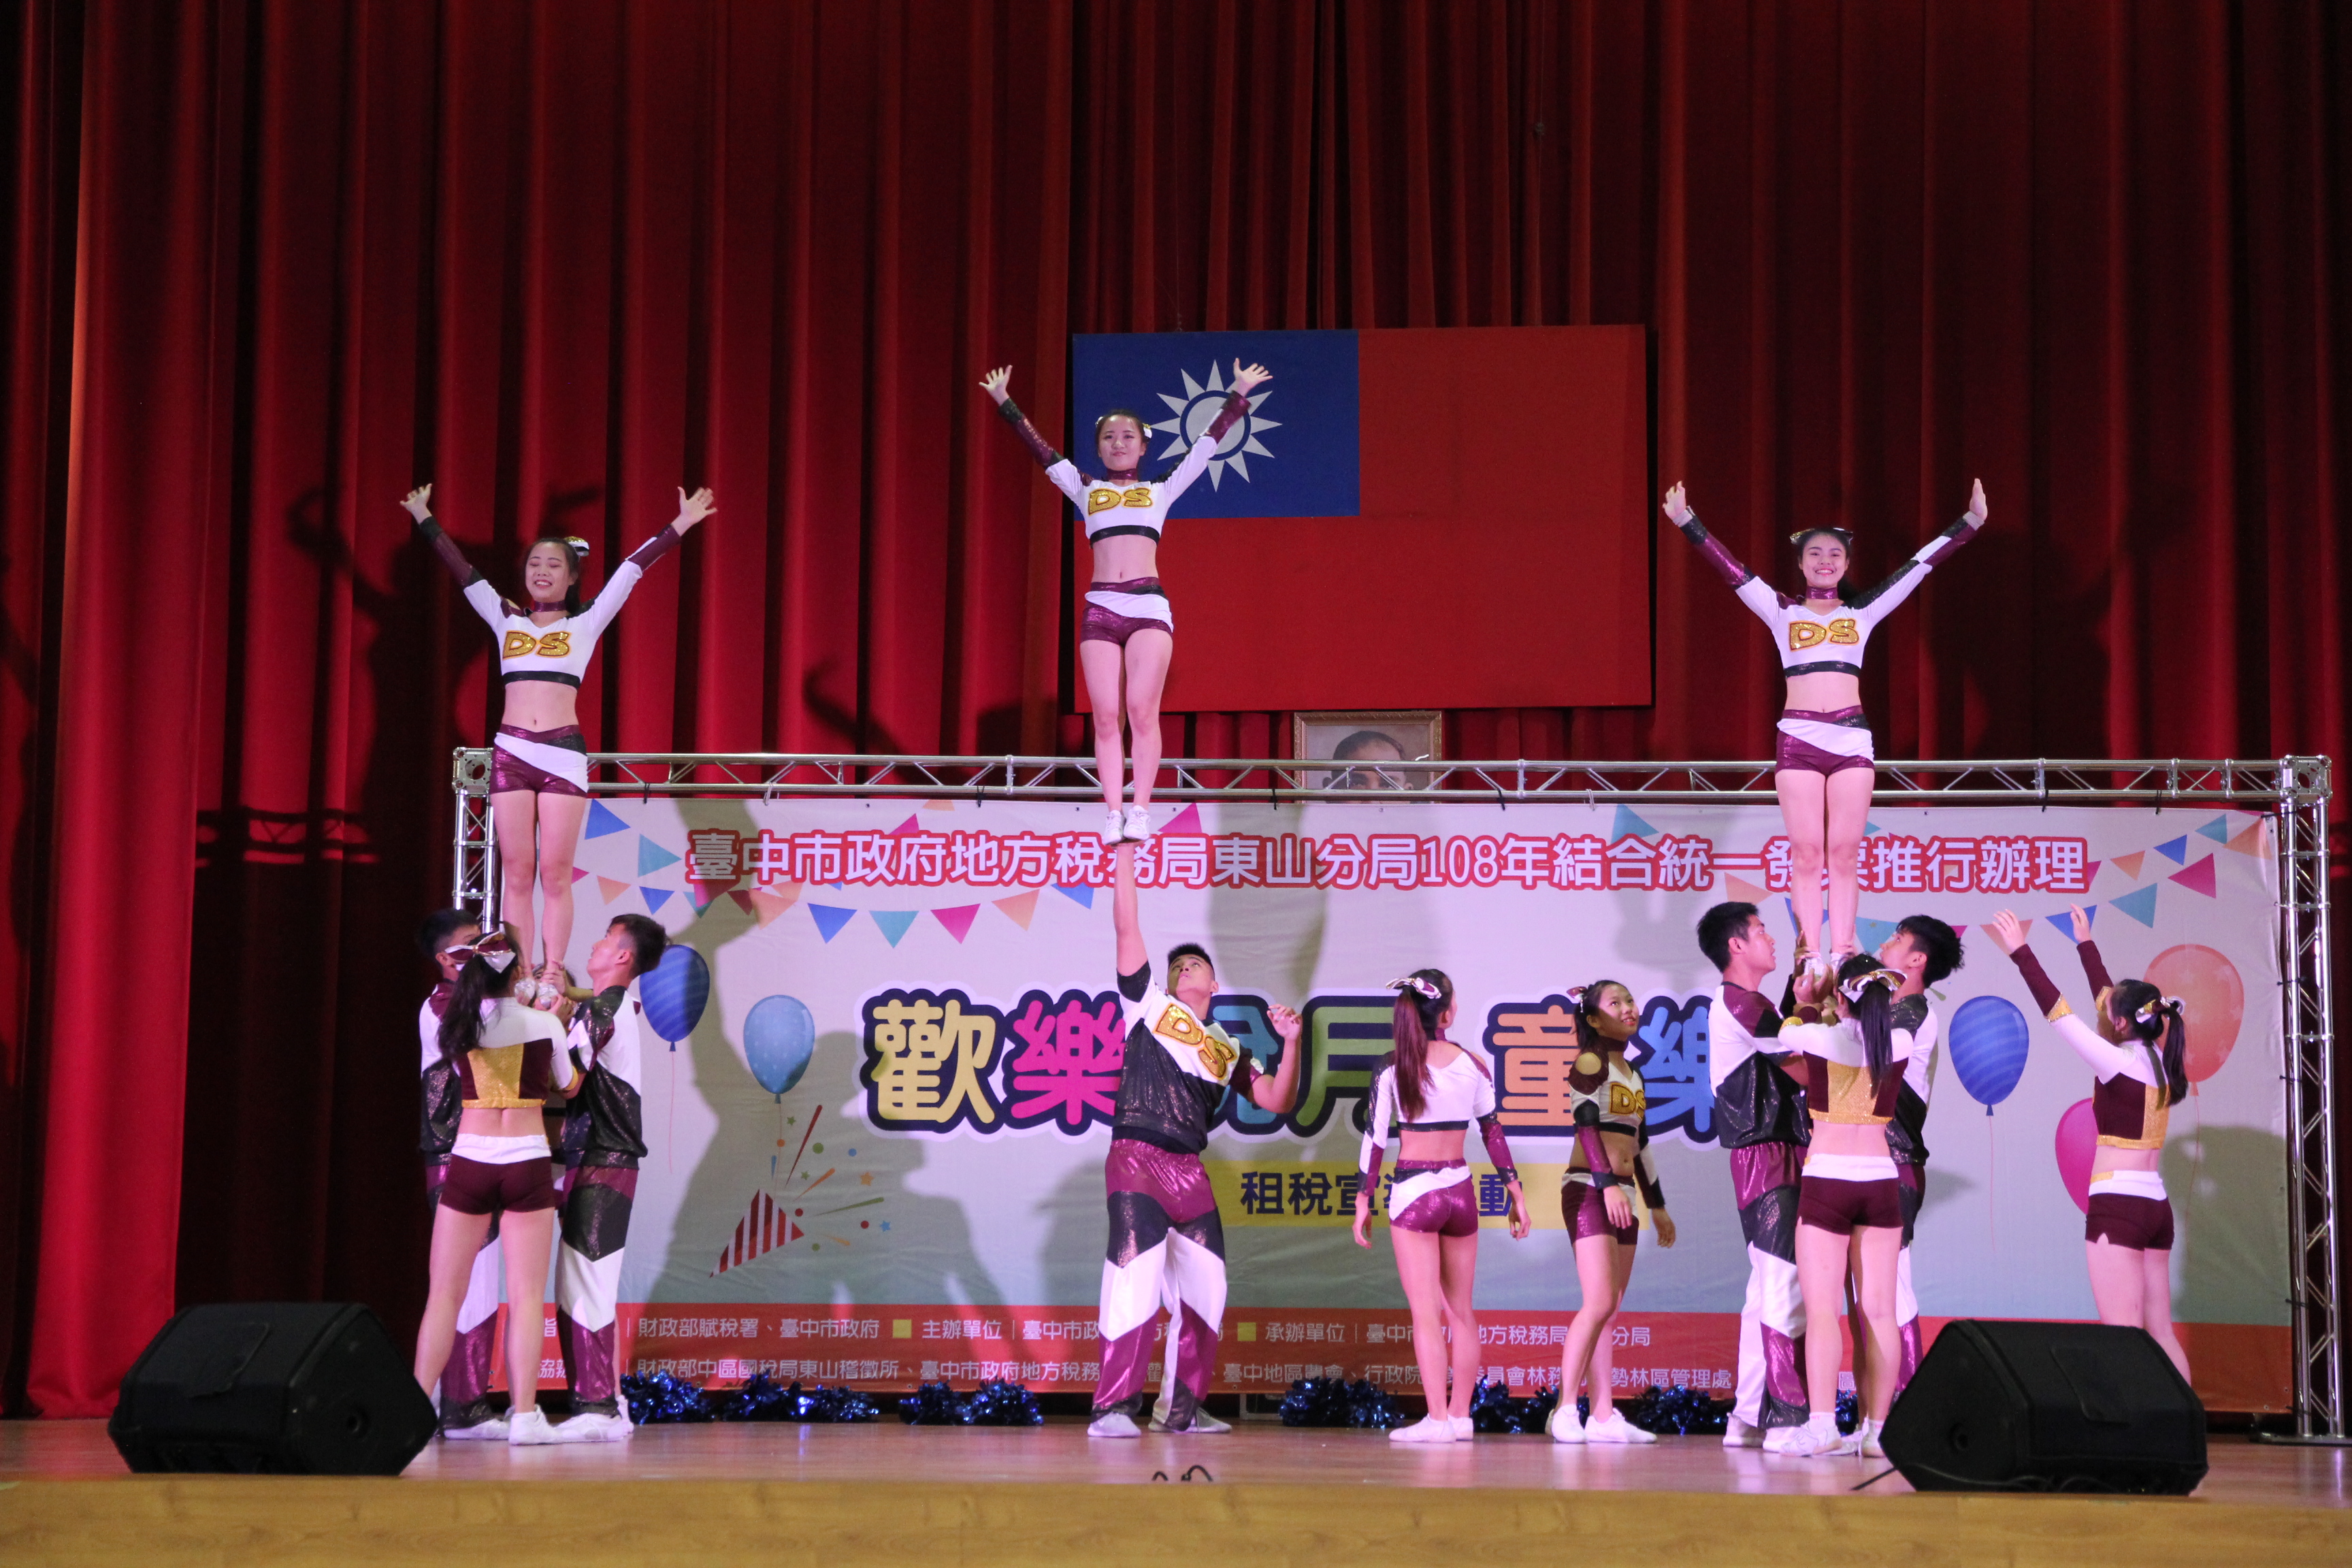 開場表演由東山高中啦啦隊帶來熱鬧的舞蹈演出，舞蹈中有許多高難度技巧，讓氣氛熱力沸騰！